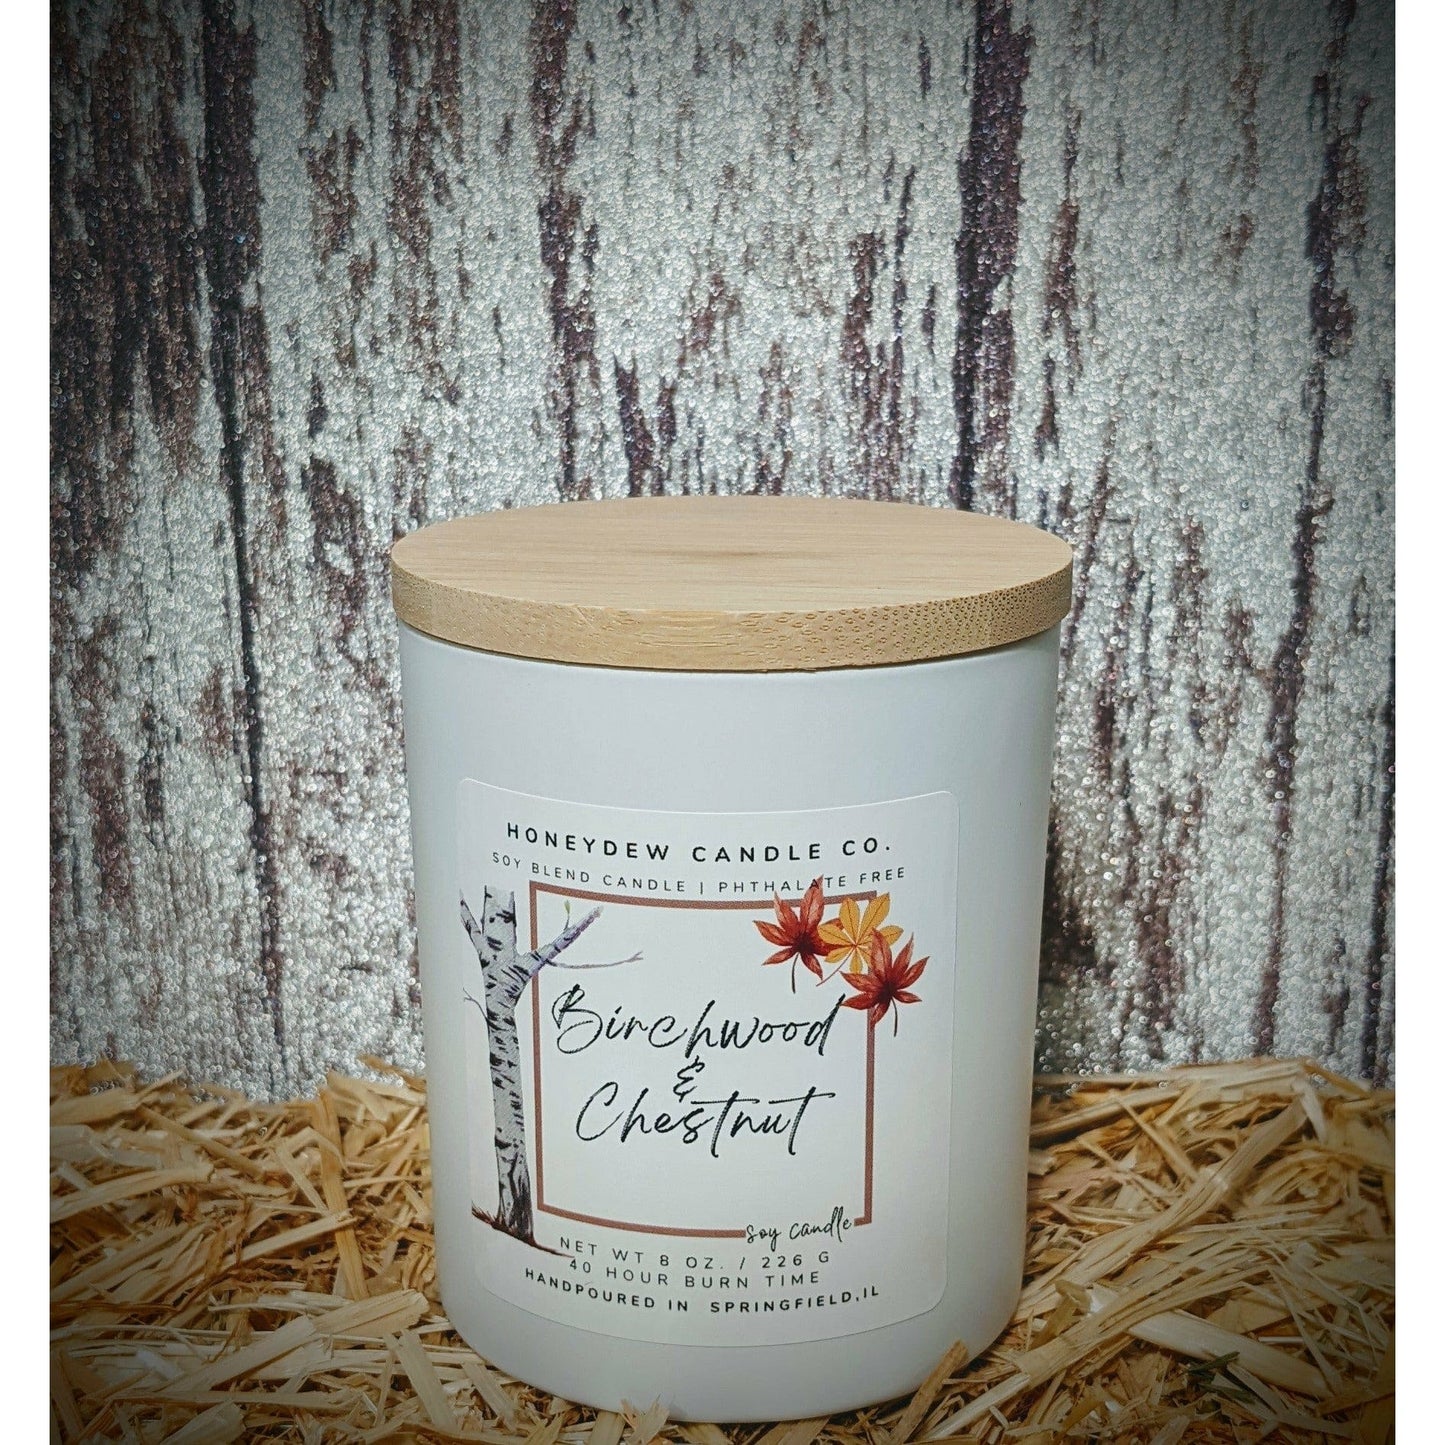 Birchwood & Chestnut Jar Candle 10 oz.